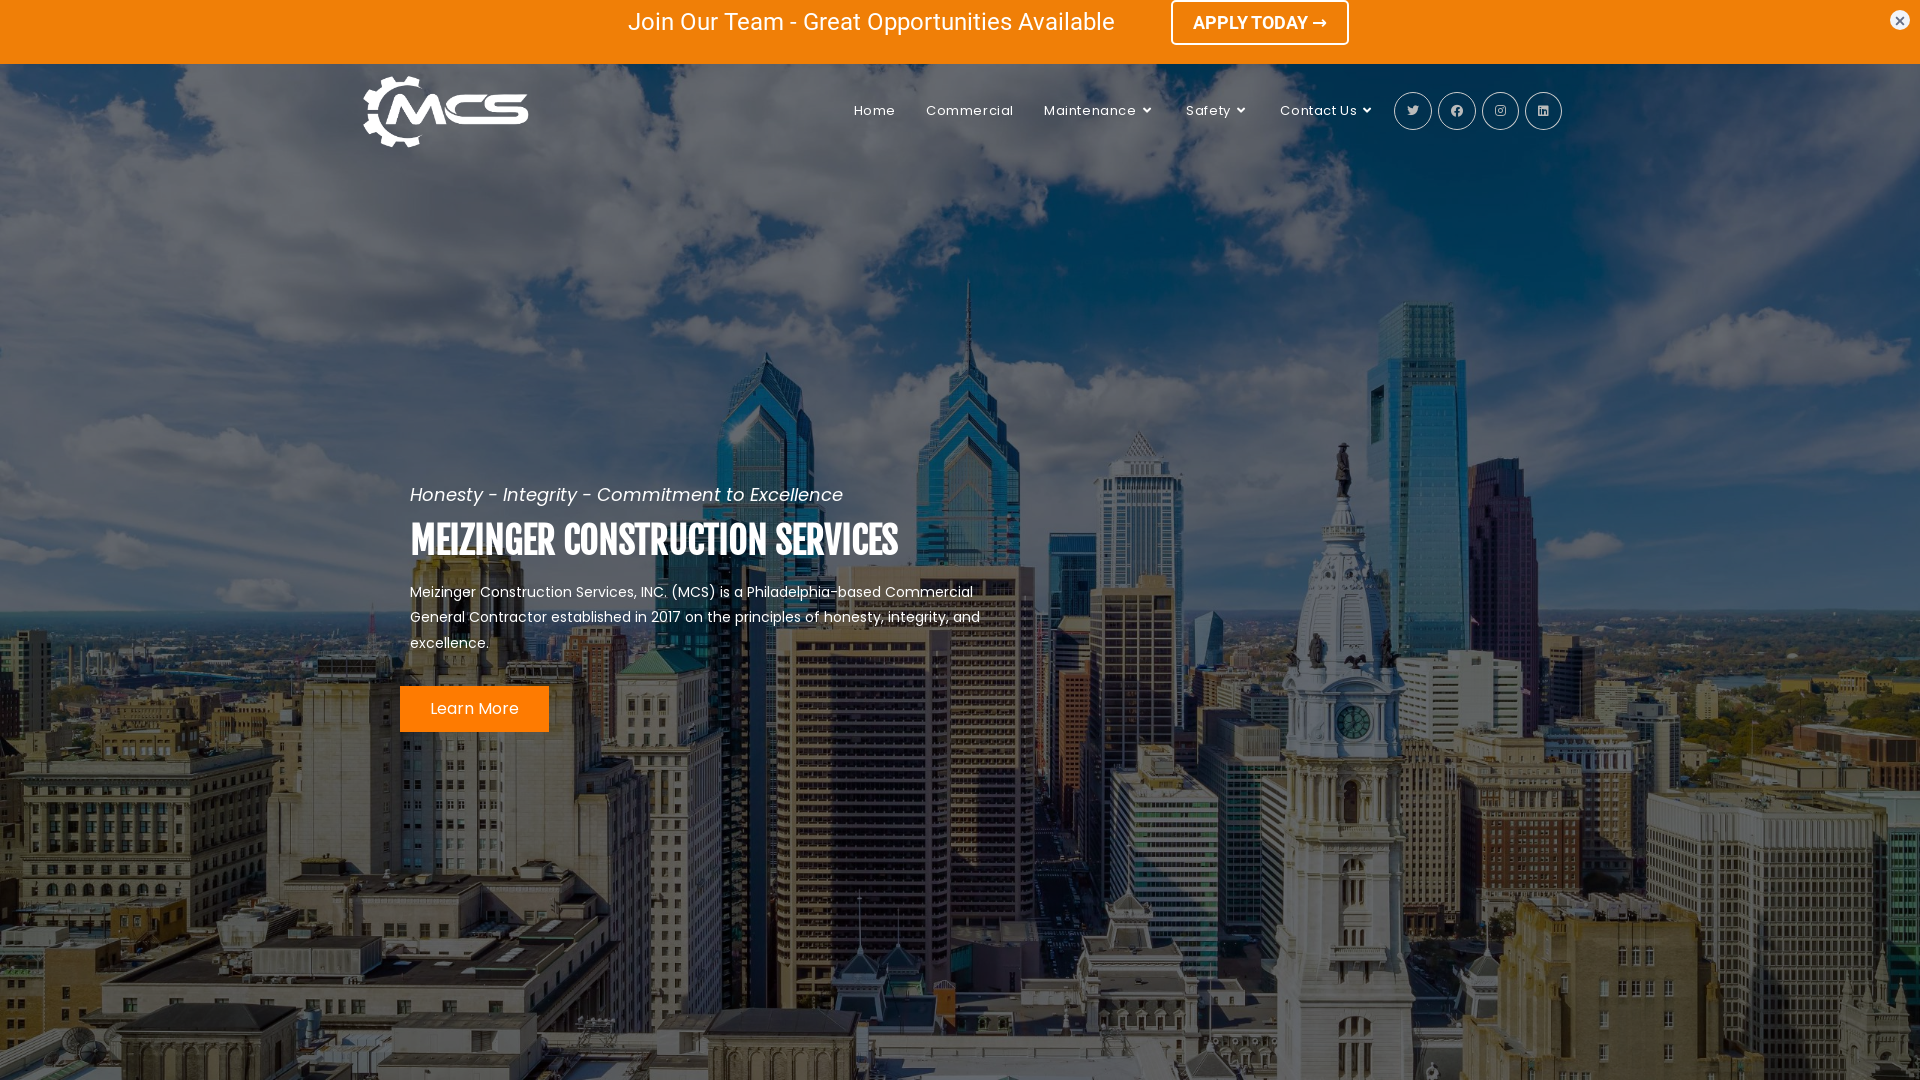 Meizinger Construction Services